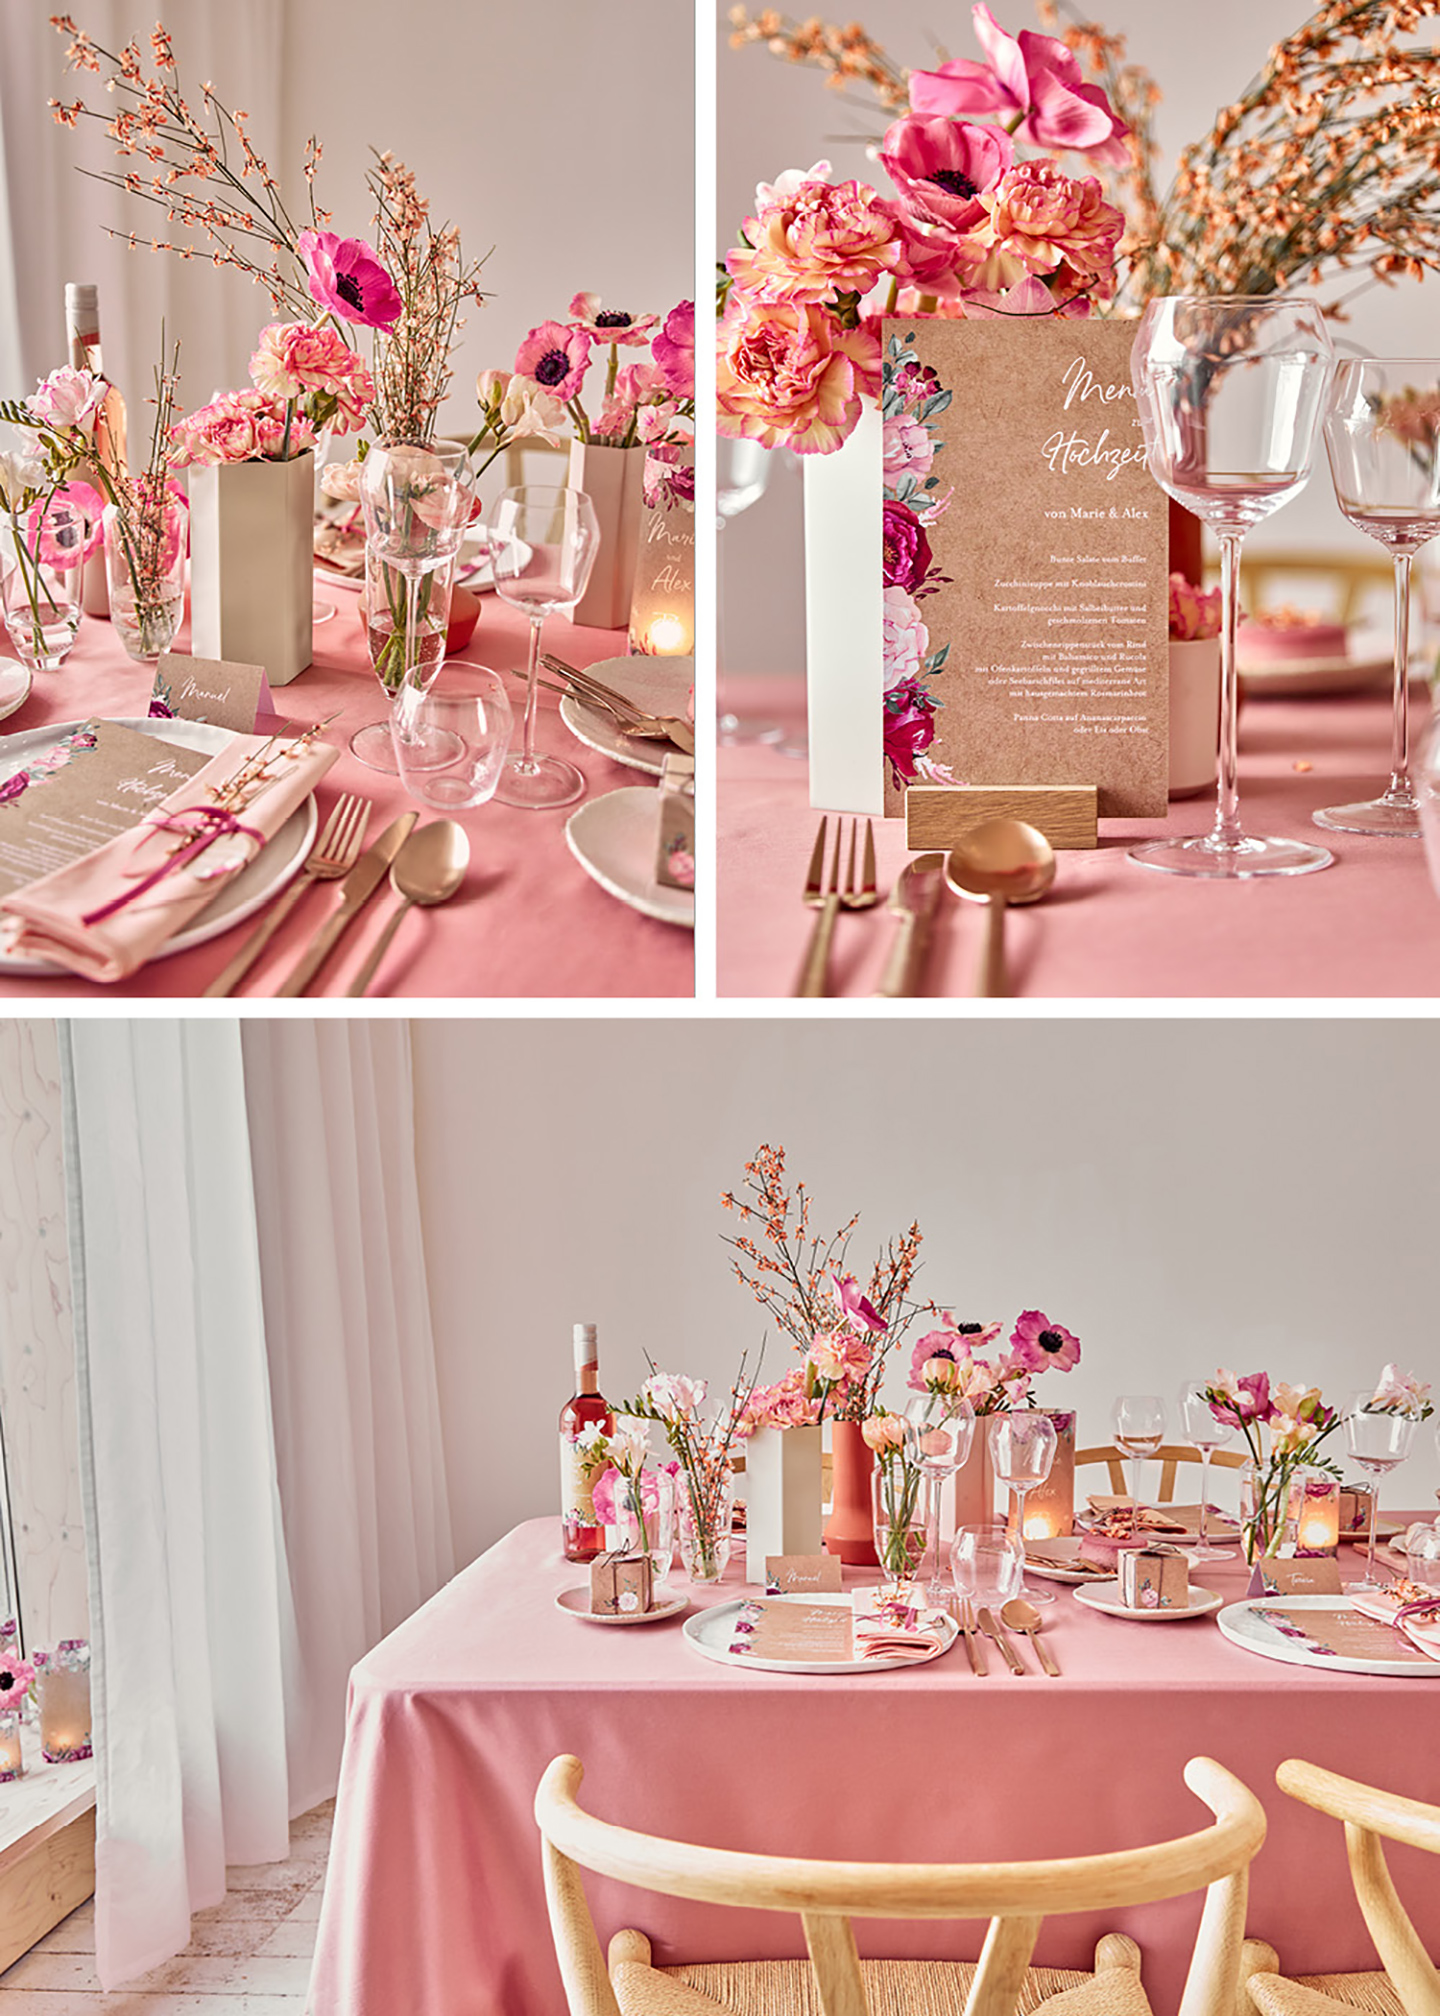 Tischdeko Hochzeit: Liebevoll angerichteter Hochzeitstisch mit Blumen, Geschirr und Papeterie, farblich aufeinander abgestimmt: die soften und leuchtenden Pinktöne sehen schön zusammen aus.